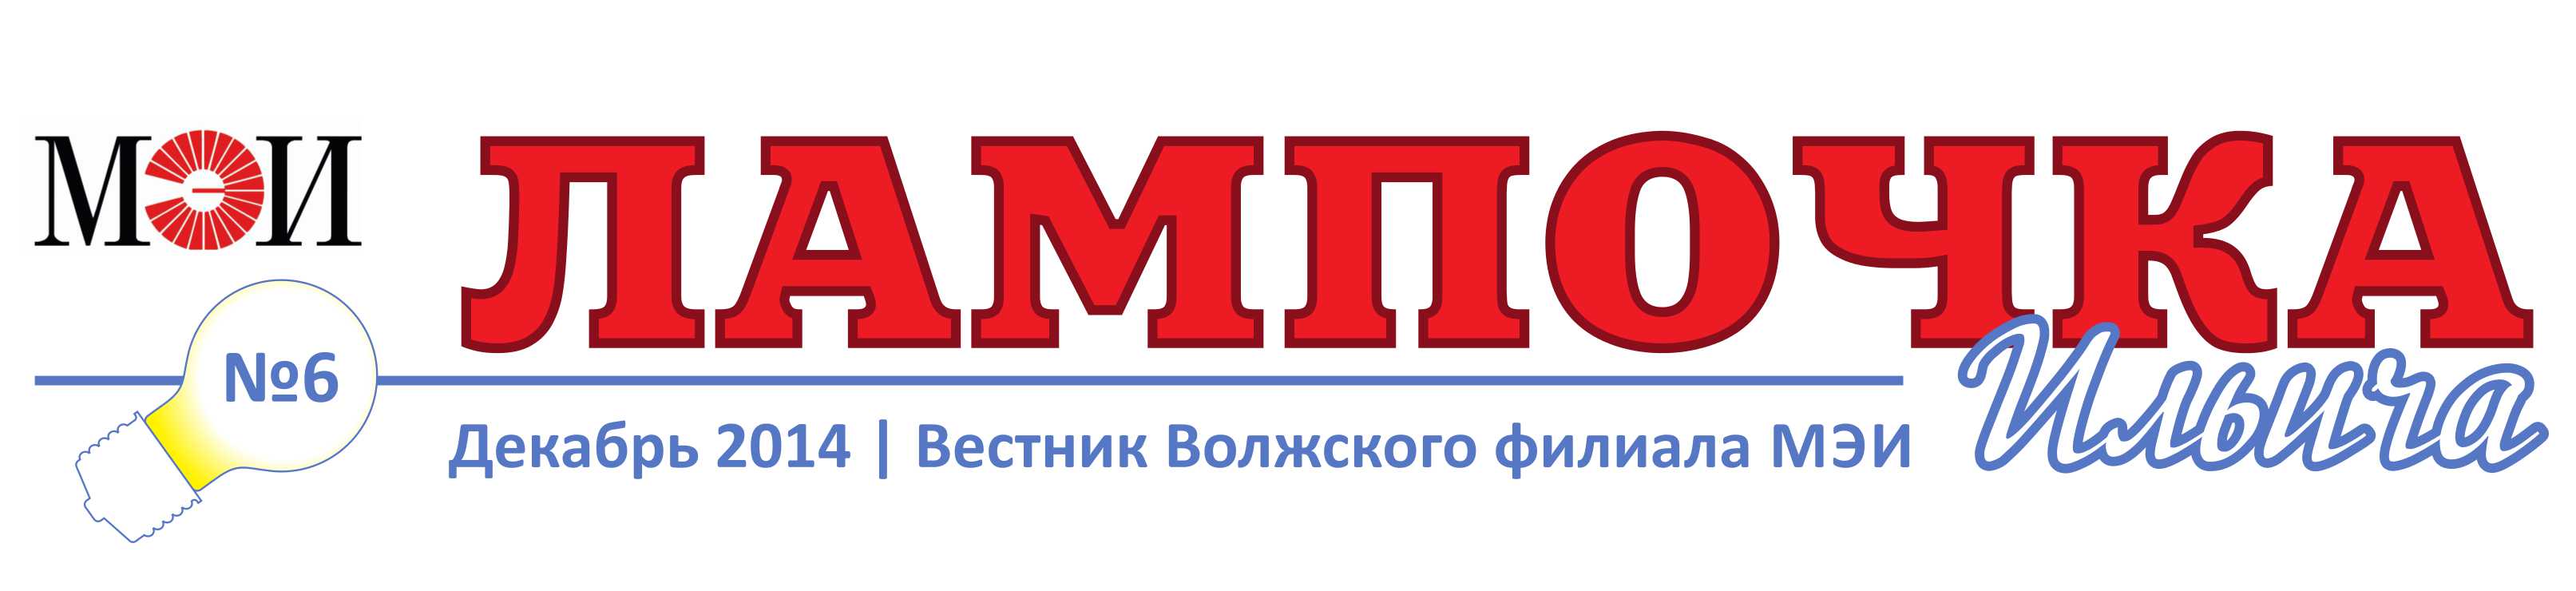 газета-06 (2014 декабрь)